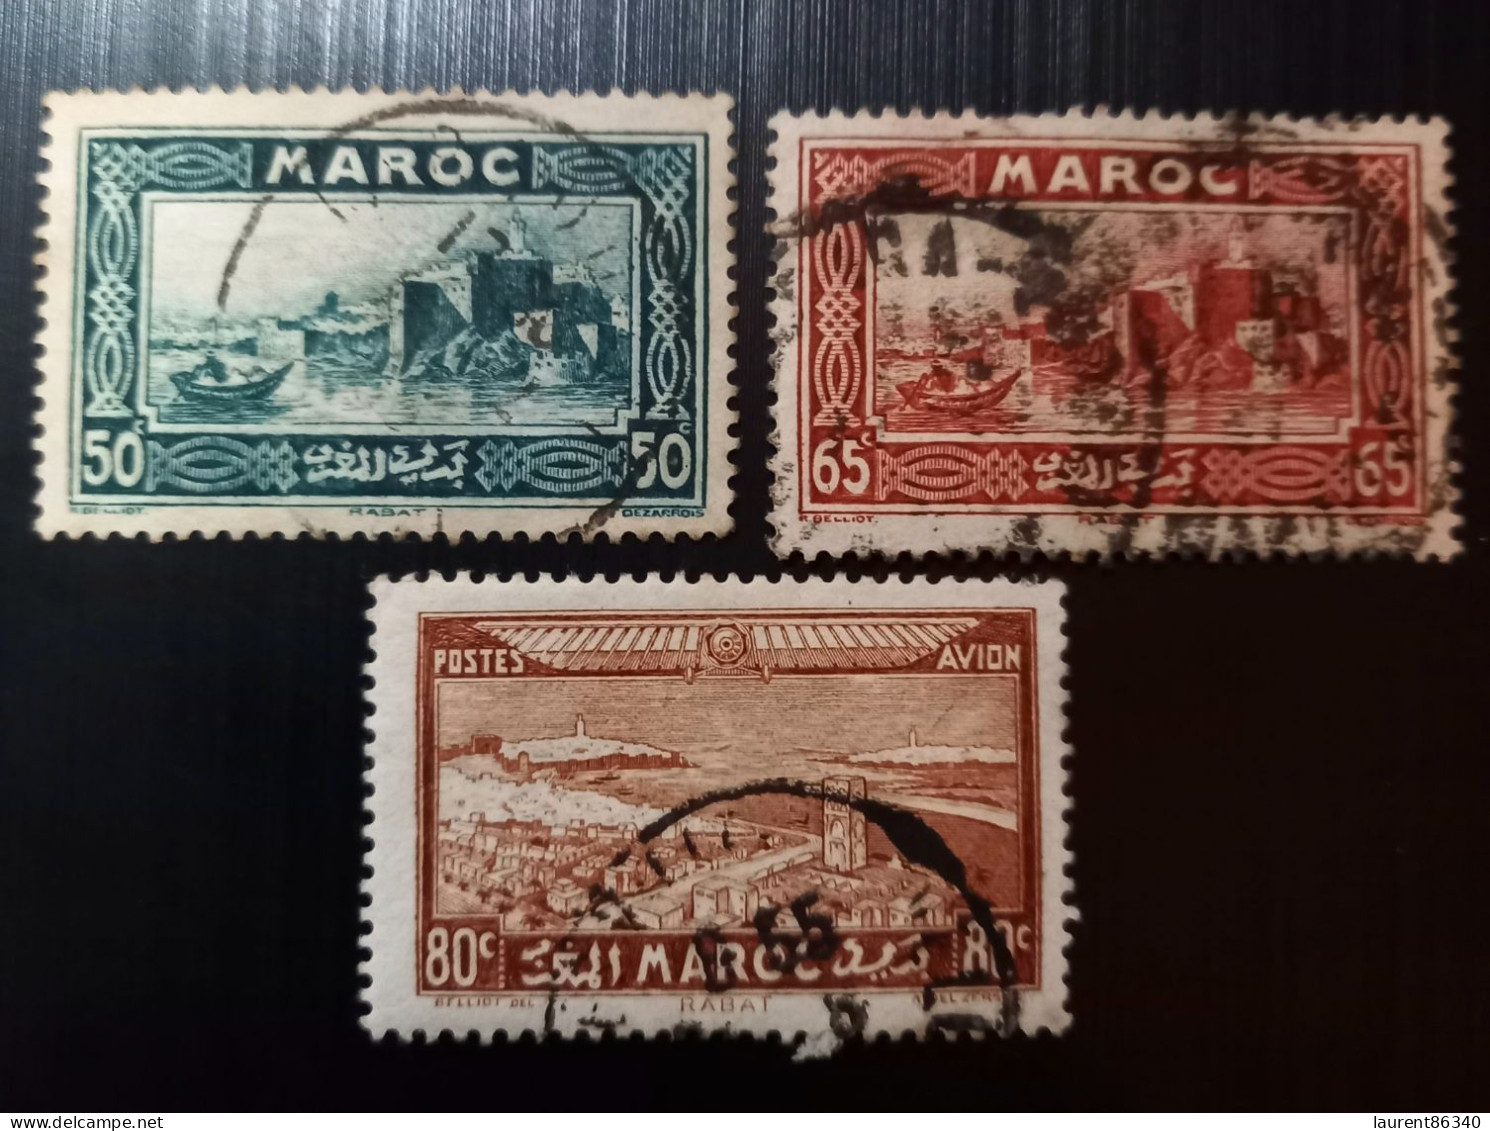 Maroc 1933 Local Motives & 1933 Airmail - Views Of The City  Modèle: R. Beliot Gravure: Del Rieu Lot 1 - Usados